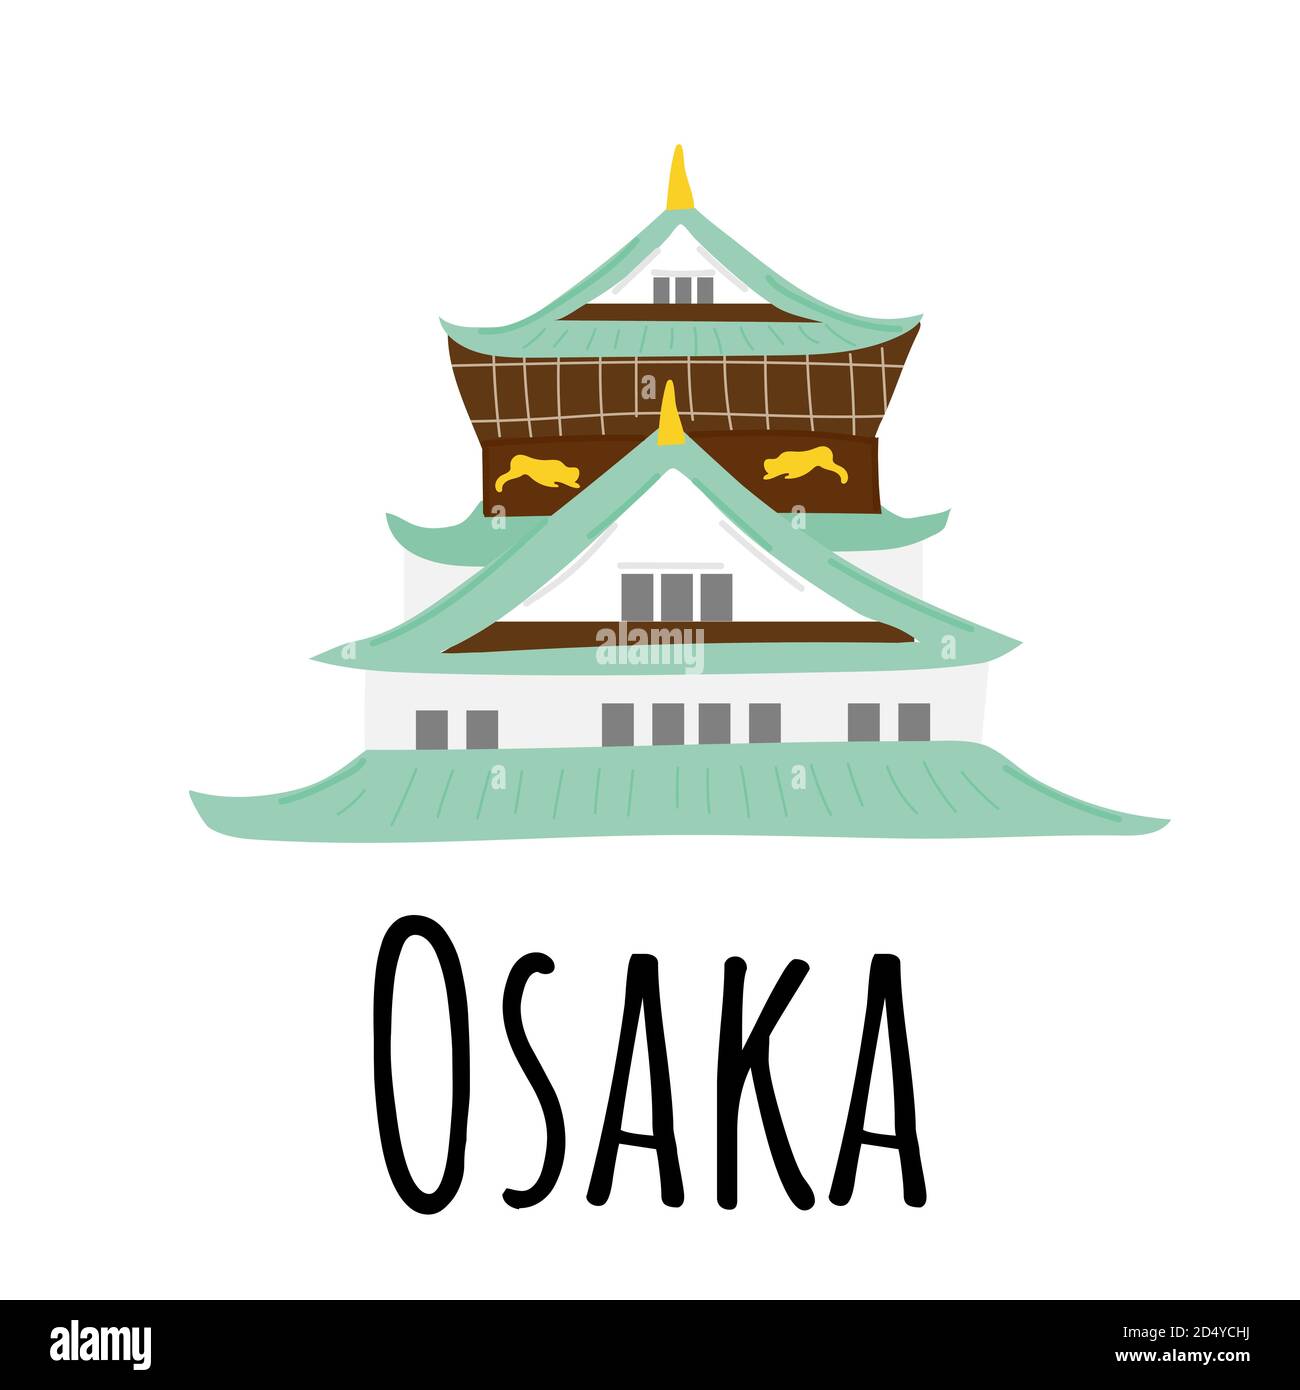 Osaka-Tempel. Grüne und weiße Dekorationen. China Kultur und Religion. Handgezeichnete Vektorgrafik isoliert auf weißem Hintergrund. Stock Vektor